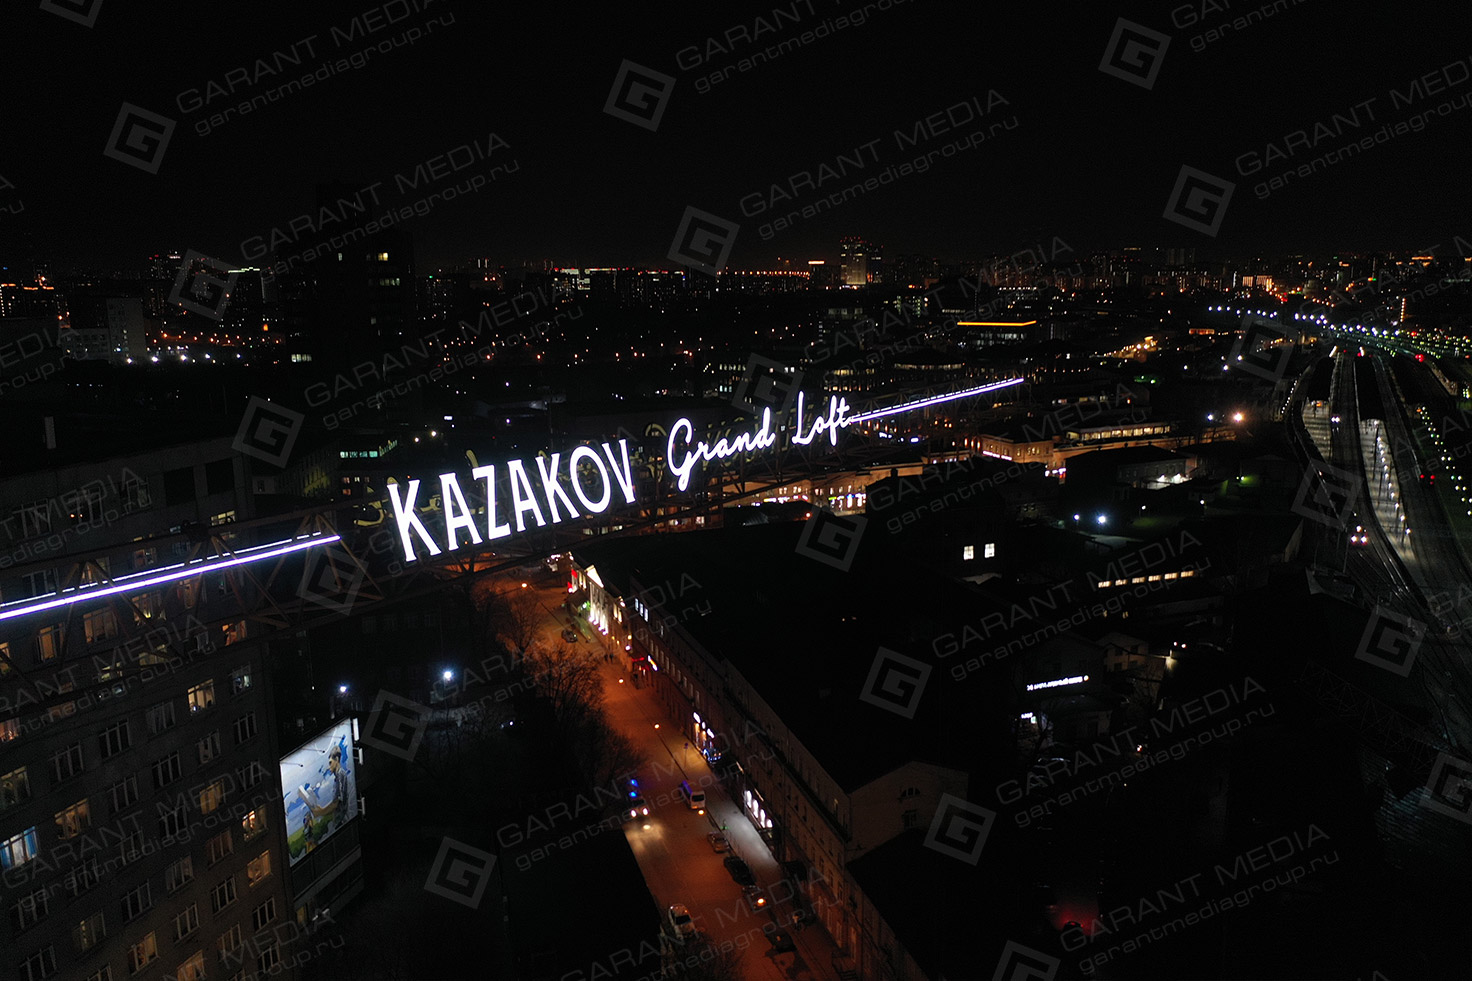 Брендирование башенного крана вывеской Kazakov Grand Loft